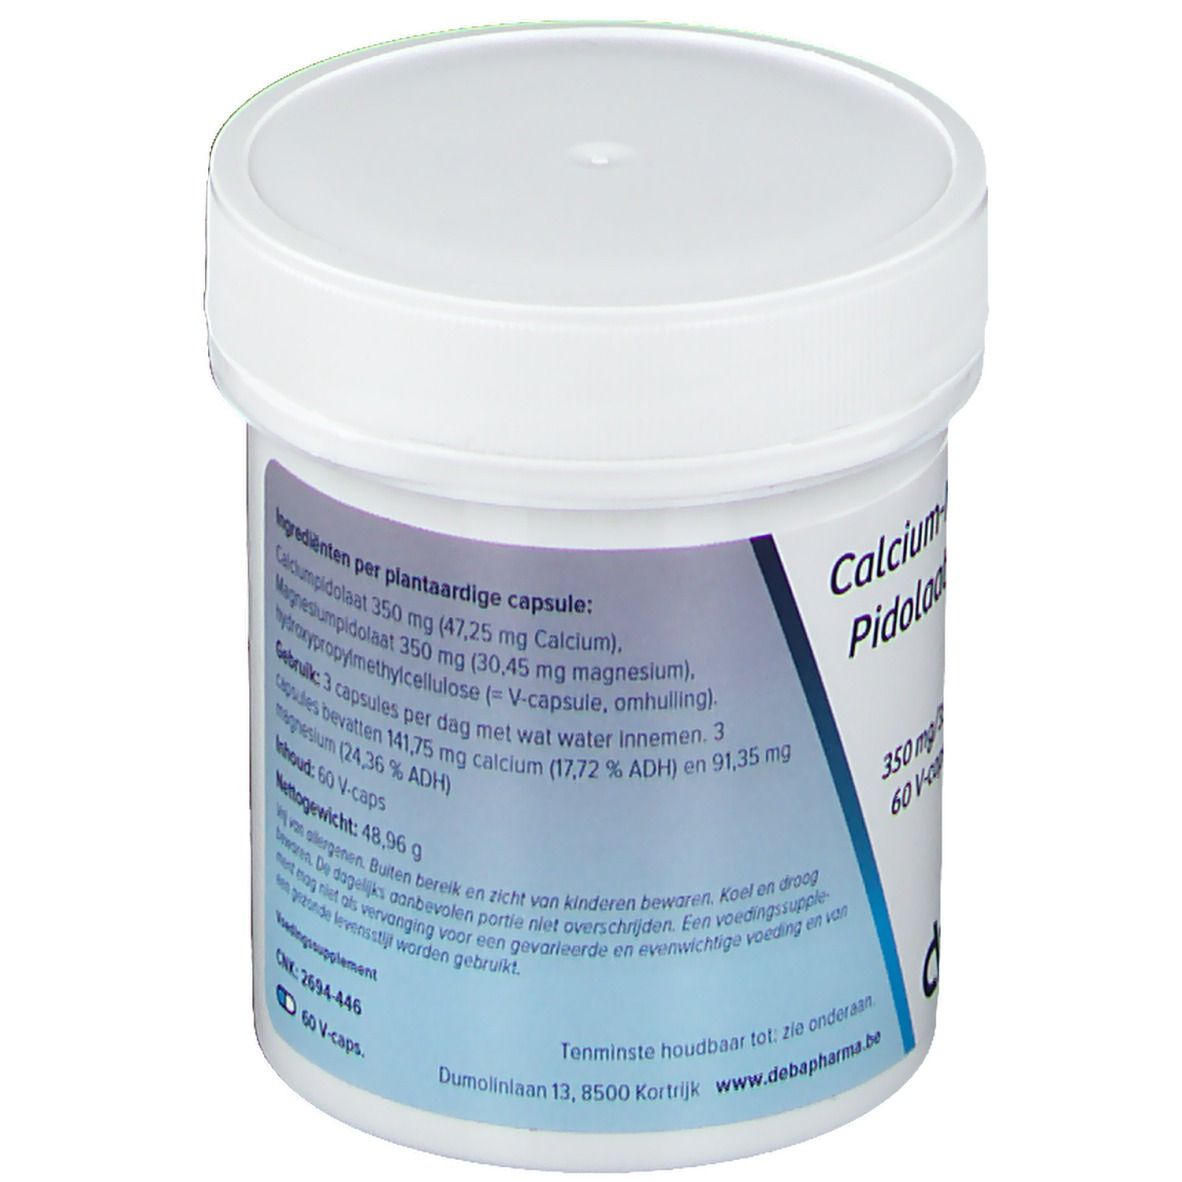 Deba Pilodate de calcium magnésium 350/350 mg